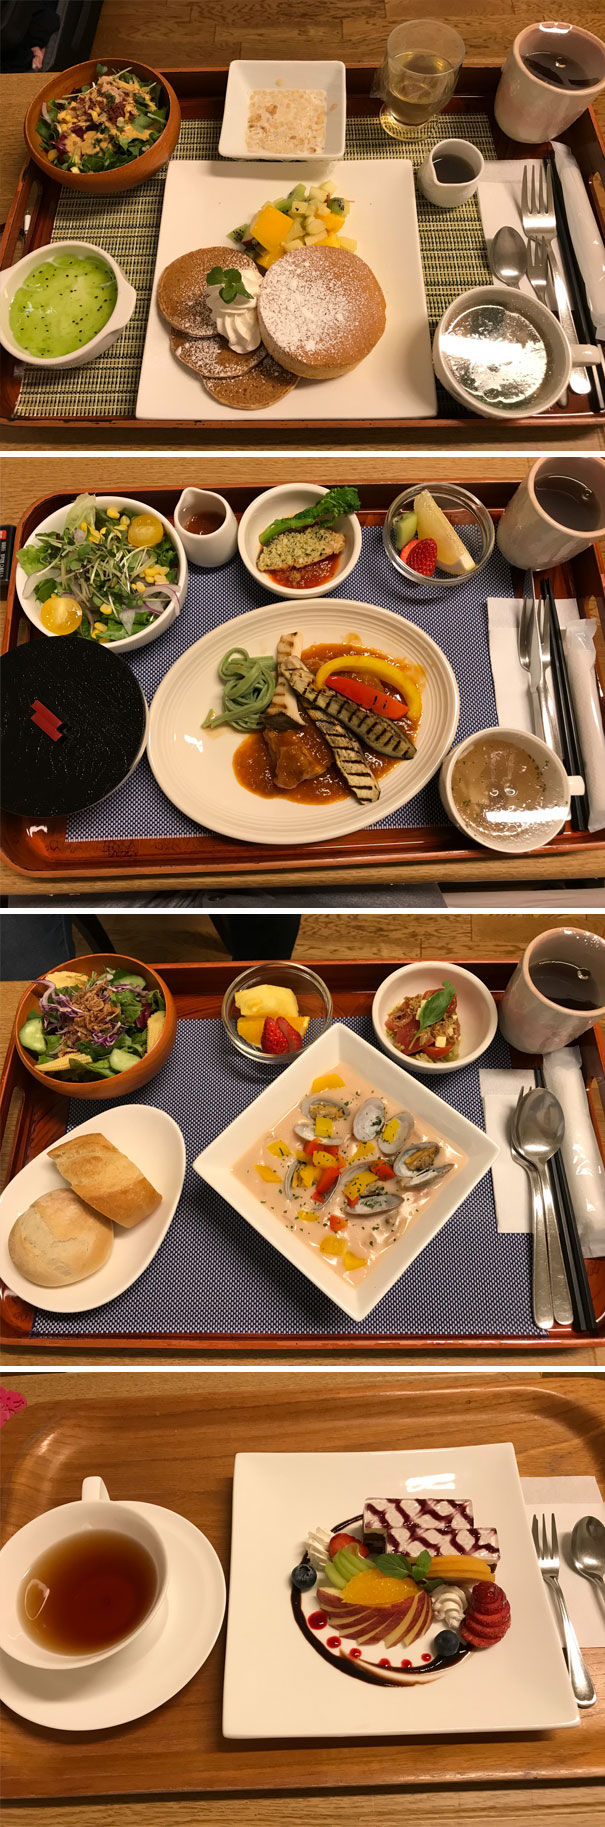 Japanese hospital food.